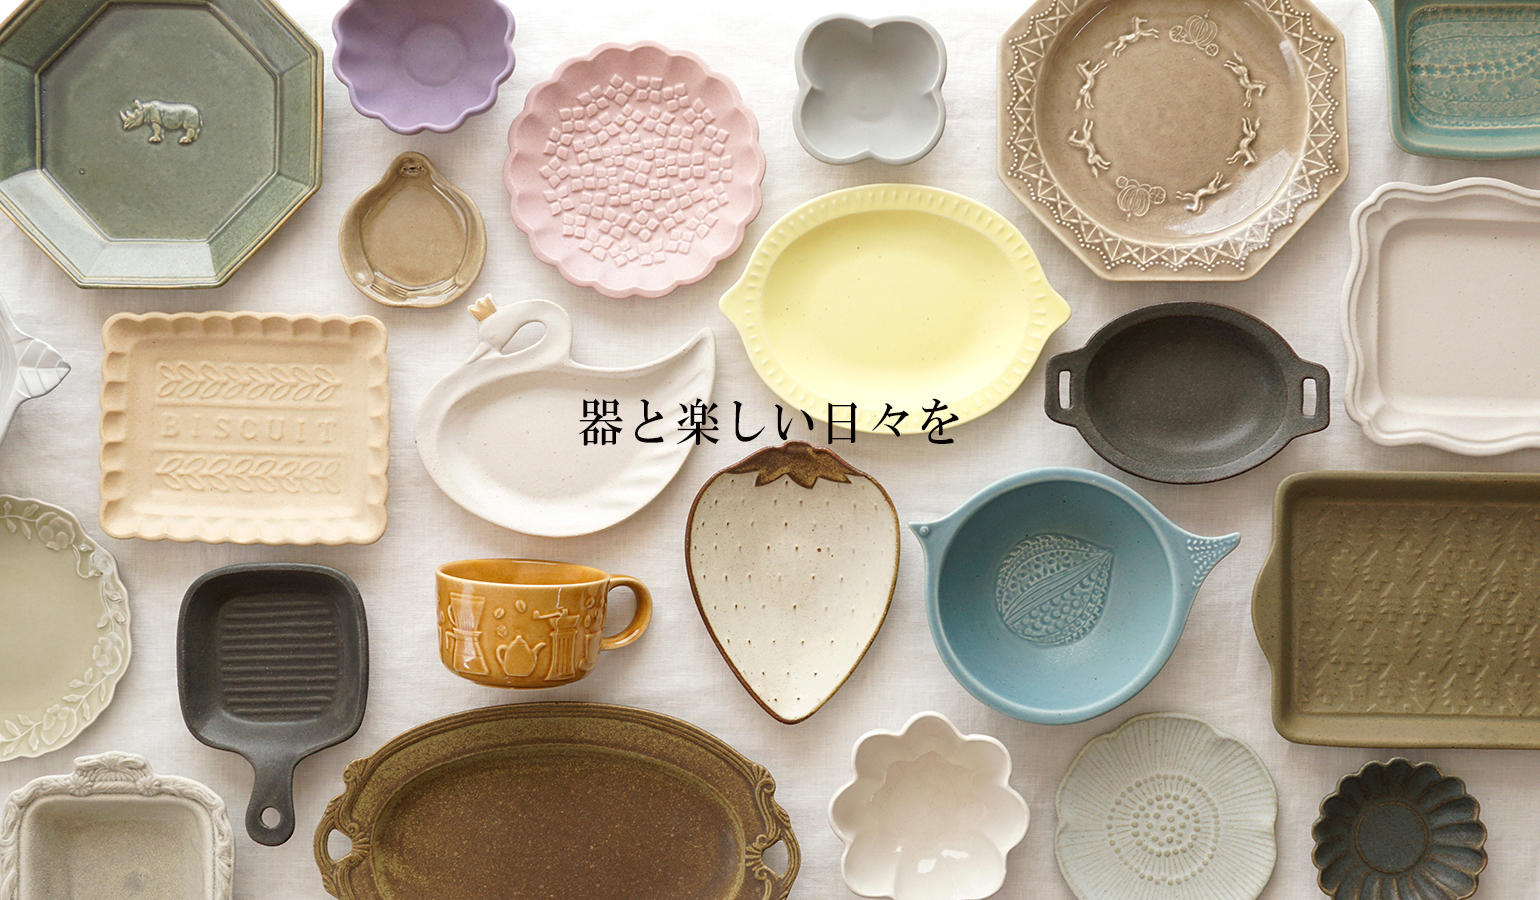 益子焼の小さな窯元「よしざわ窯」- 生活陶器「onthetable」